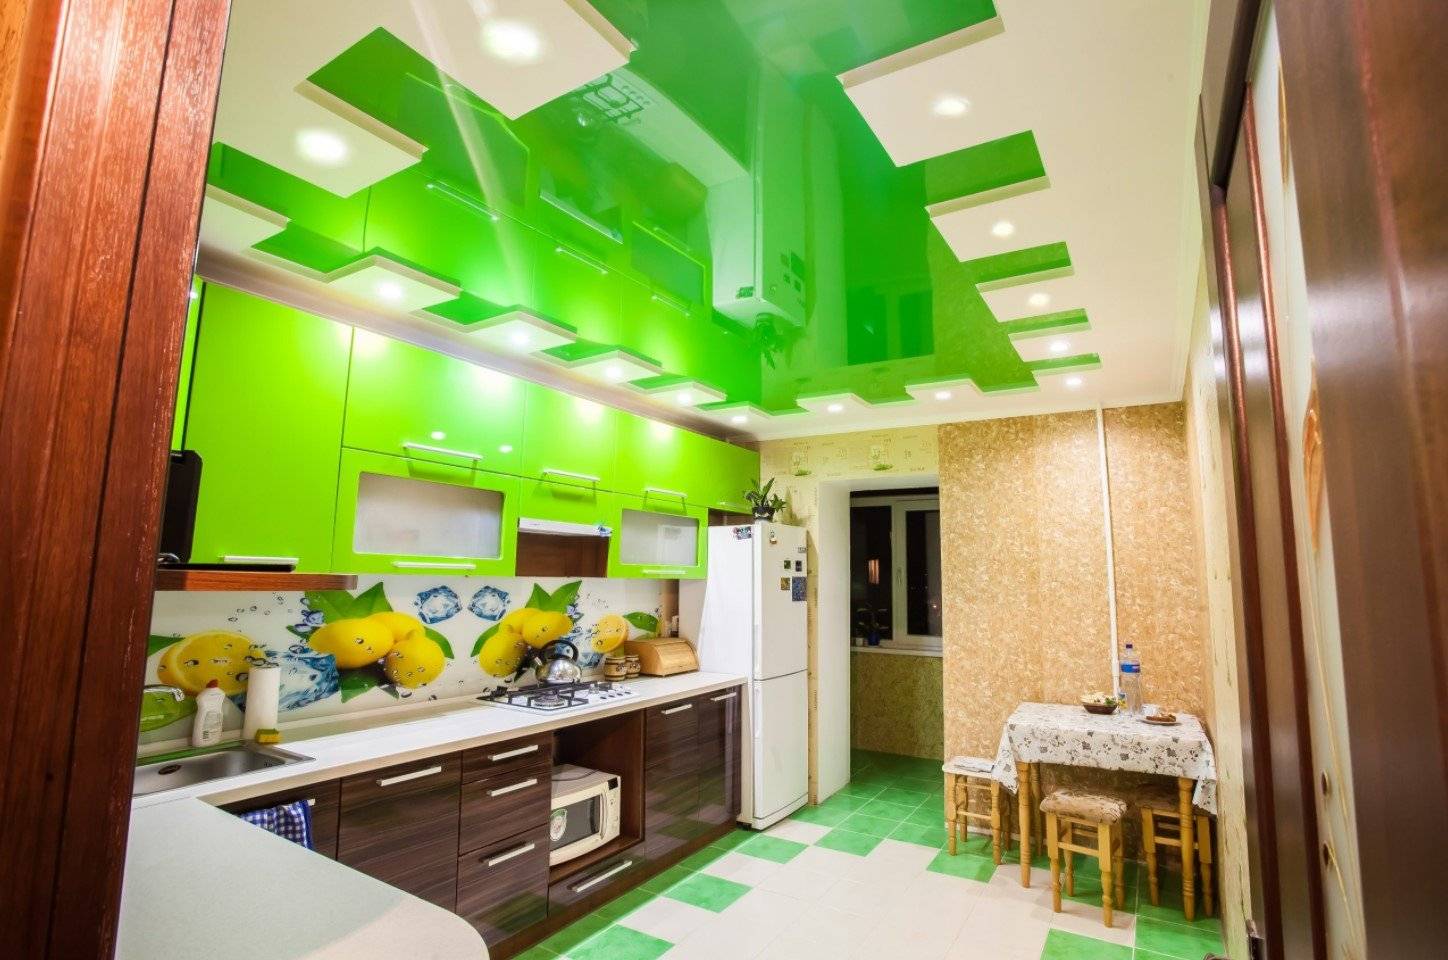 Натяжной потолок на кухне (180 фото) - новинки дизайна кухни с натяжным потолком